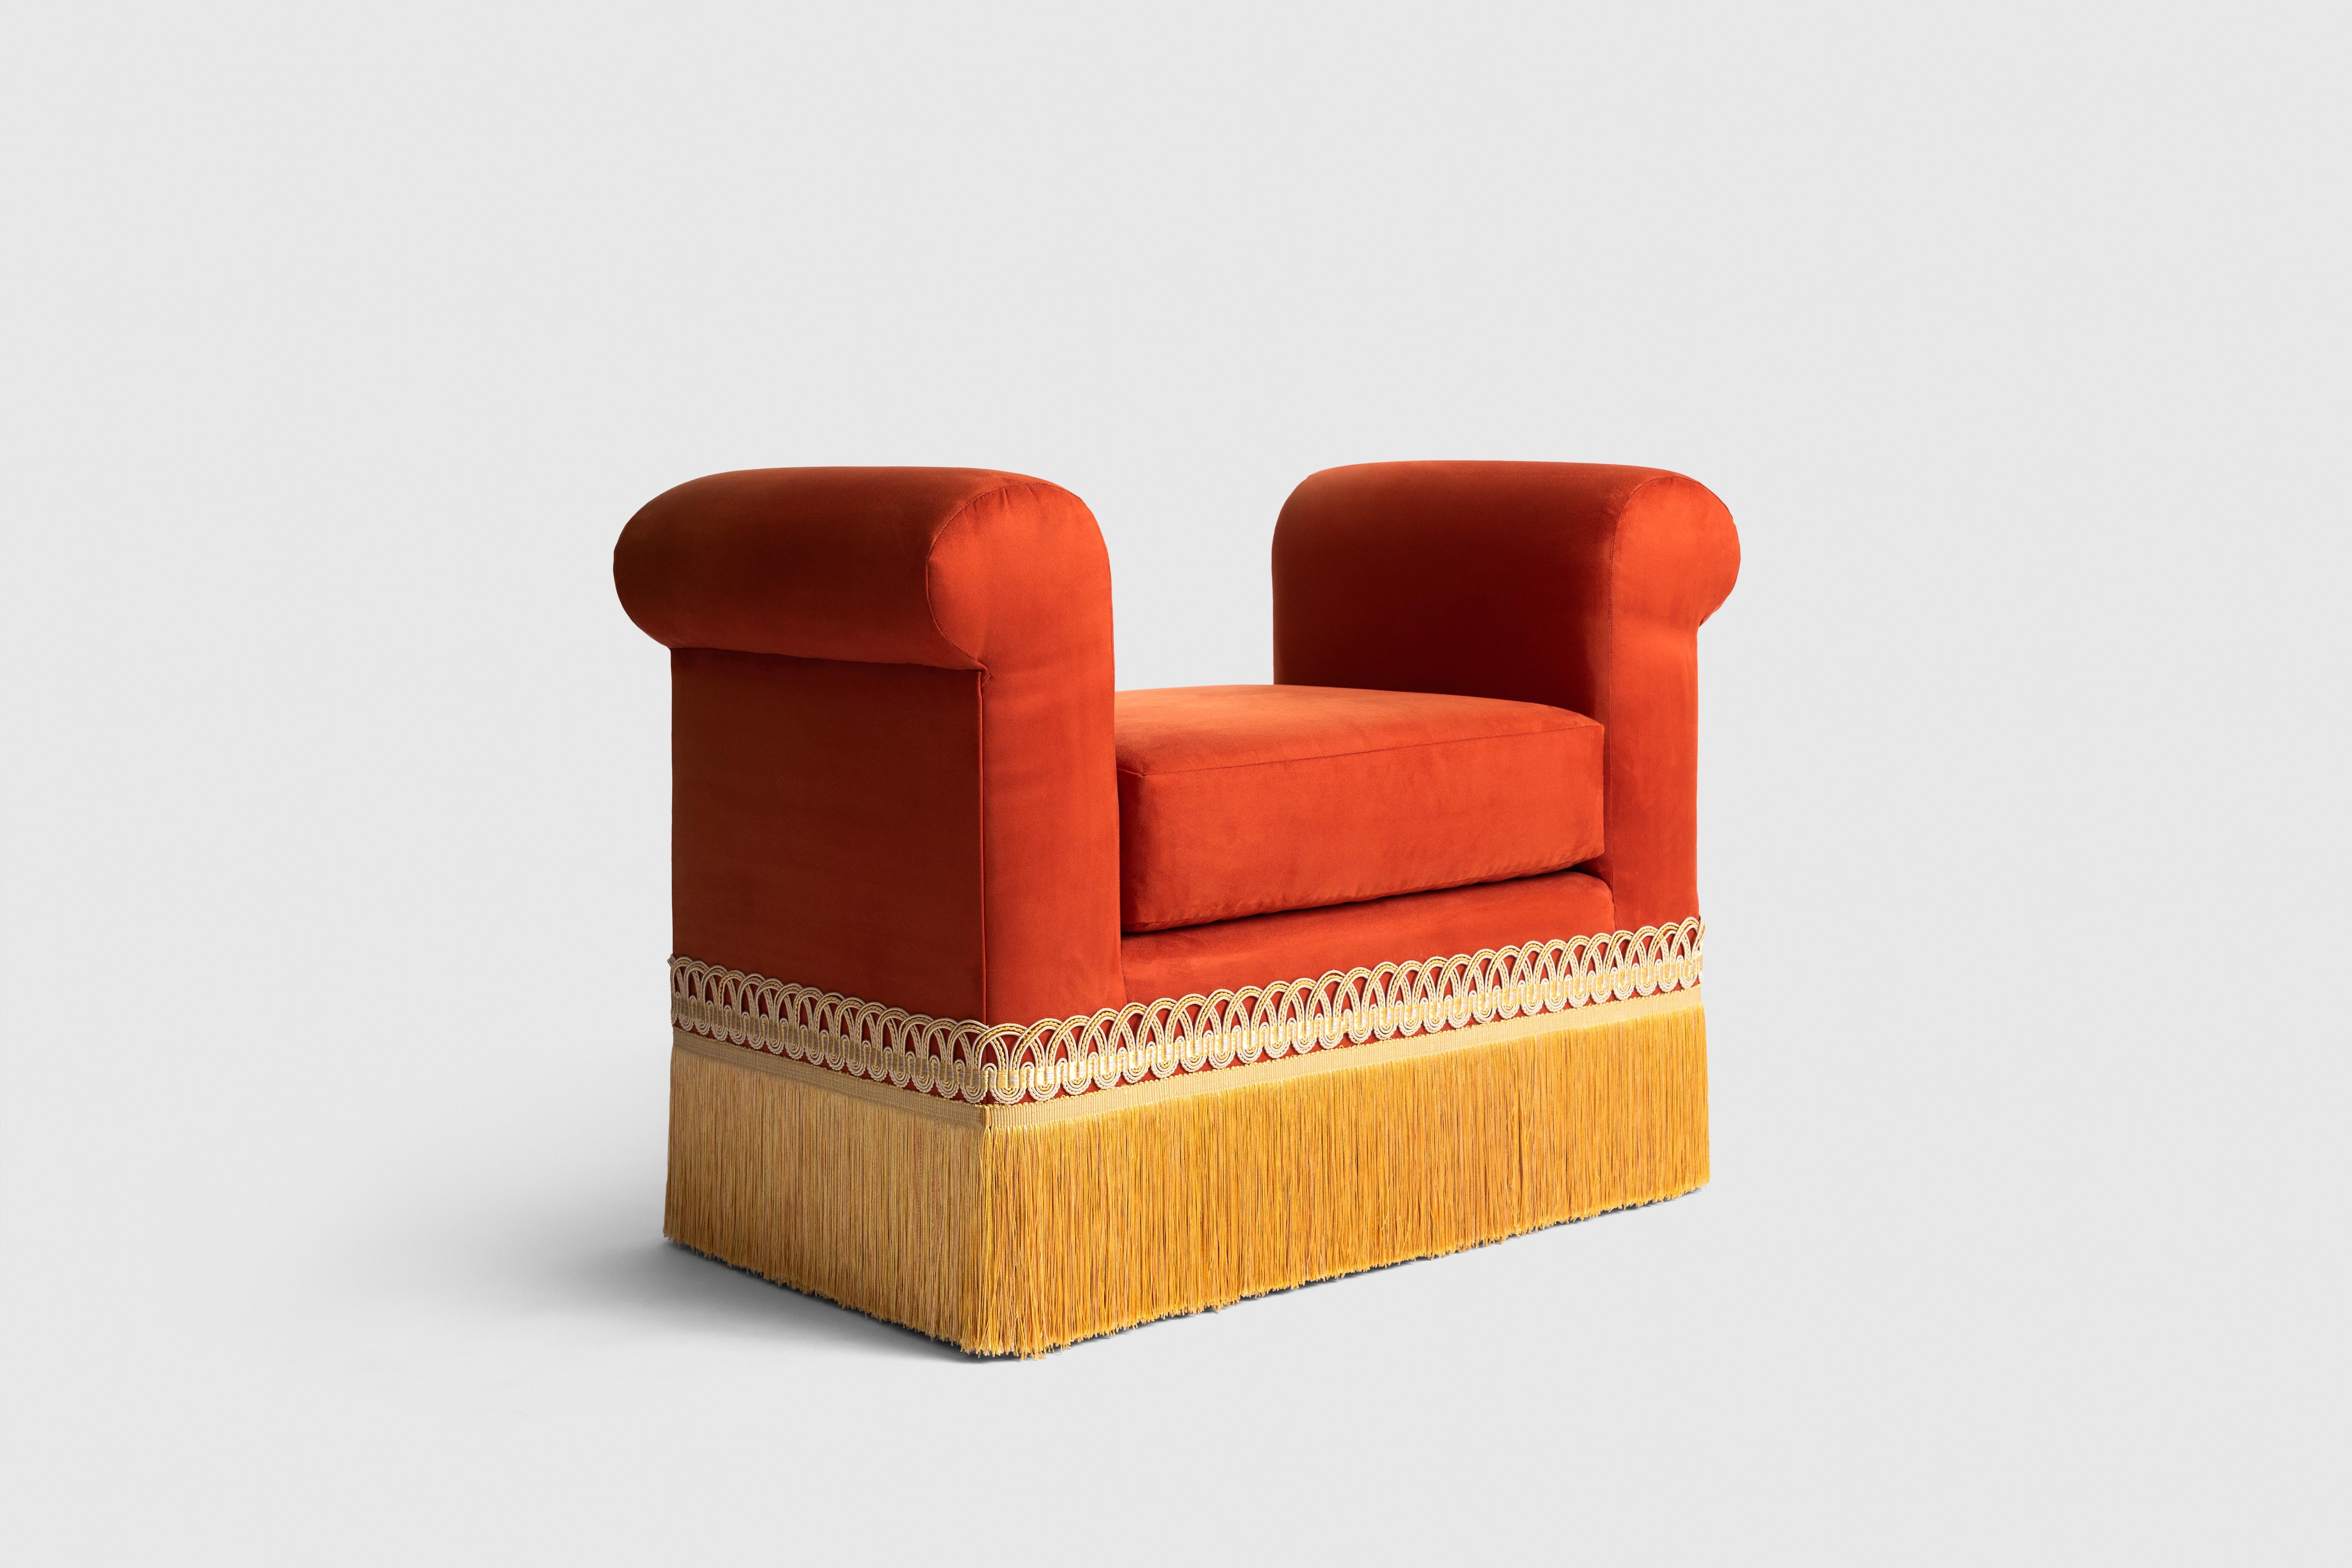 Der Ravelle-Sitz ist von den französischen Garnituren inspiriert. Dieser schöne Sitz wurde von unseren Kunsthandwerkern in Mexiko-Stadt mit Stoff und handgefertigten Verzierungen hergestellt. 
Fernanda Loyzaga hat eine Neuinterpretation der